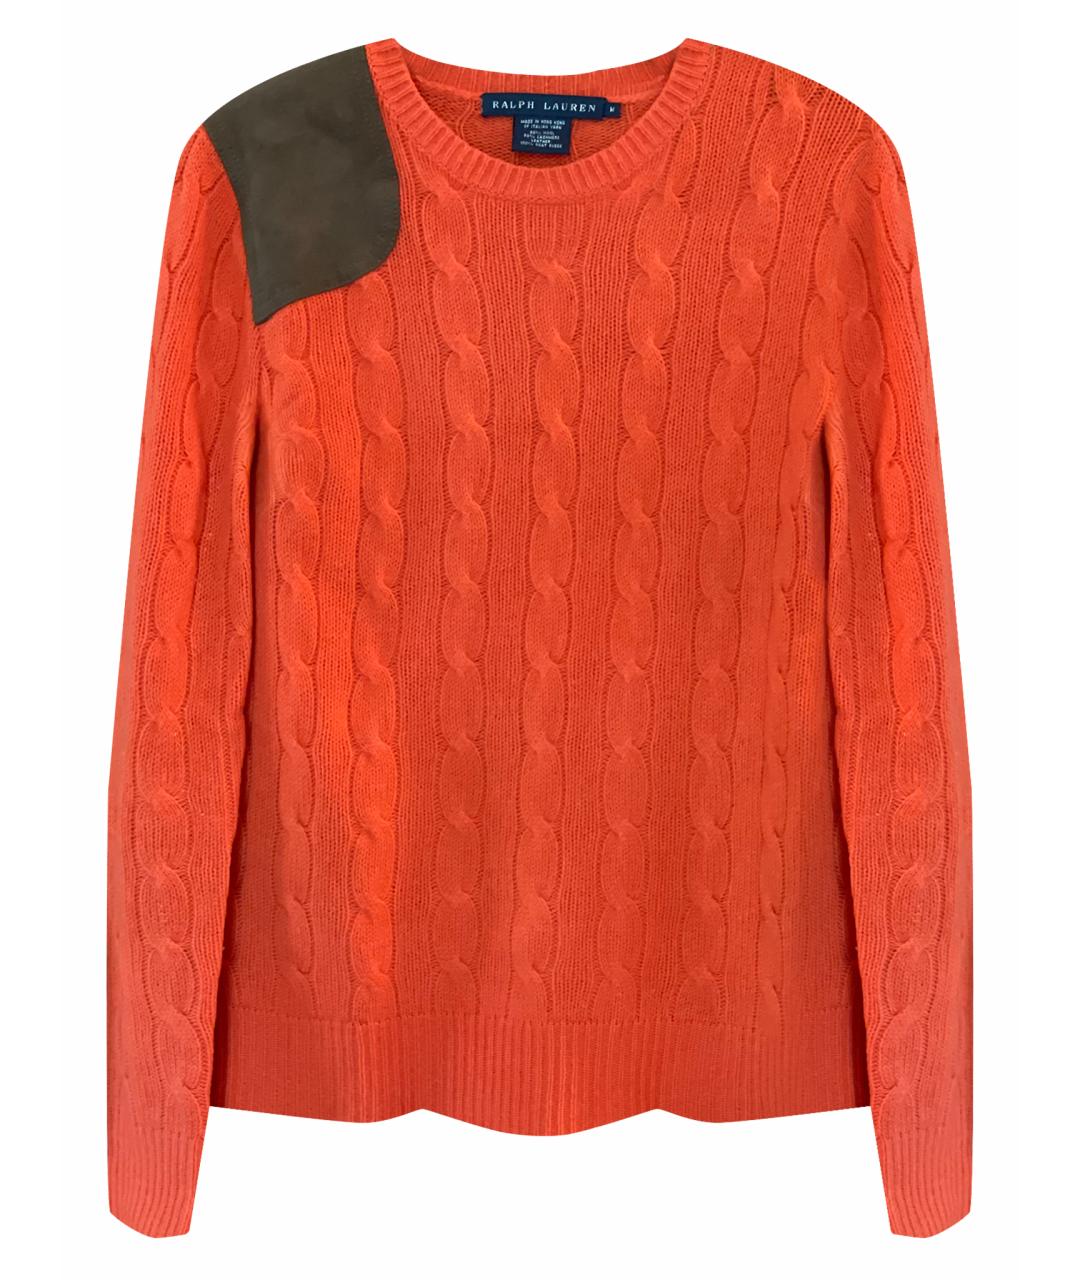 RALPH LAUREN Оранжевый шерстяной джемпер / свитер, фото 7